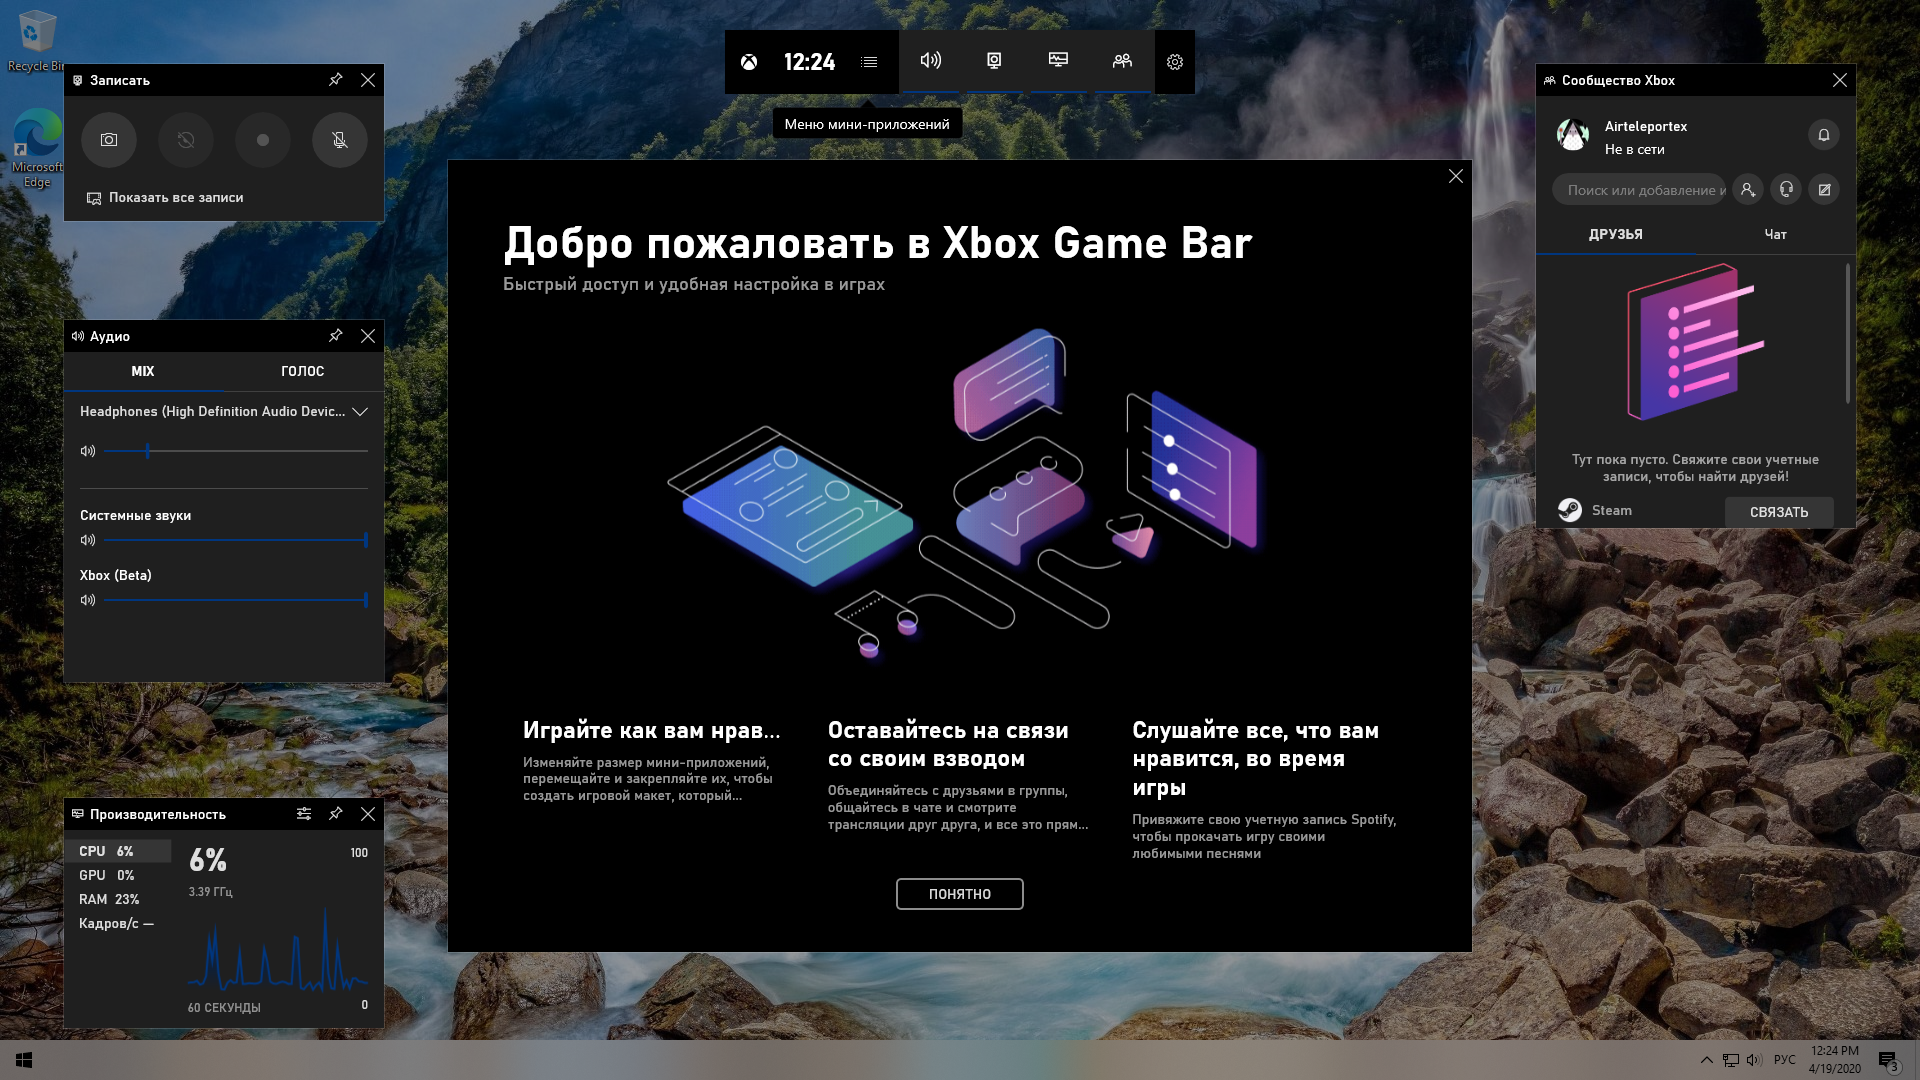 Xbox identity provider windows 10. Xbox Identity. Приложение хбокс Идентити. Панорама x64 скрины меню.